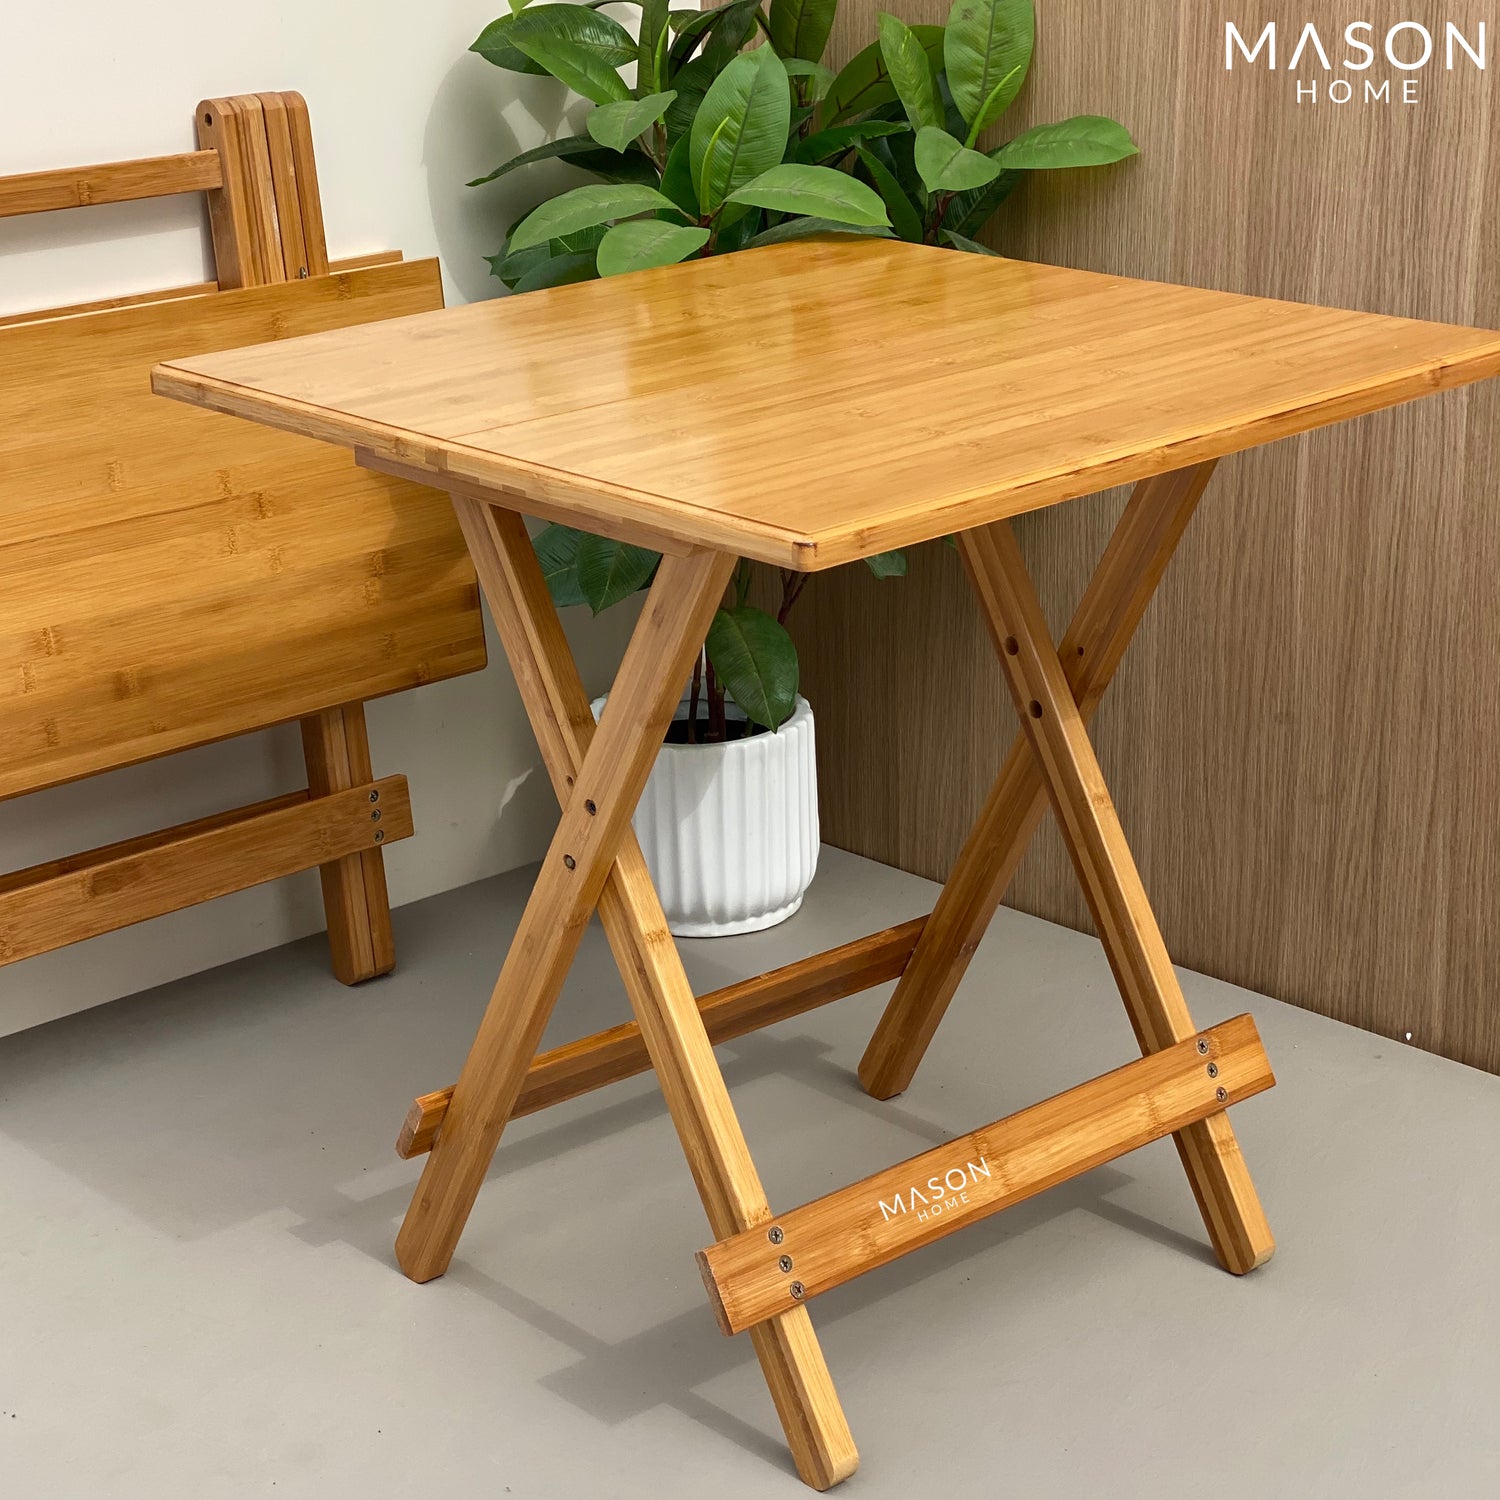 ERZA FOLDING TABLE - BIG - Mason Home by Amarsons - Lifestyle &amp; Decor